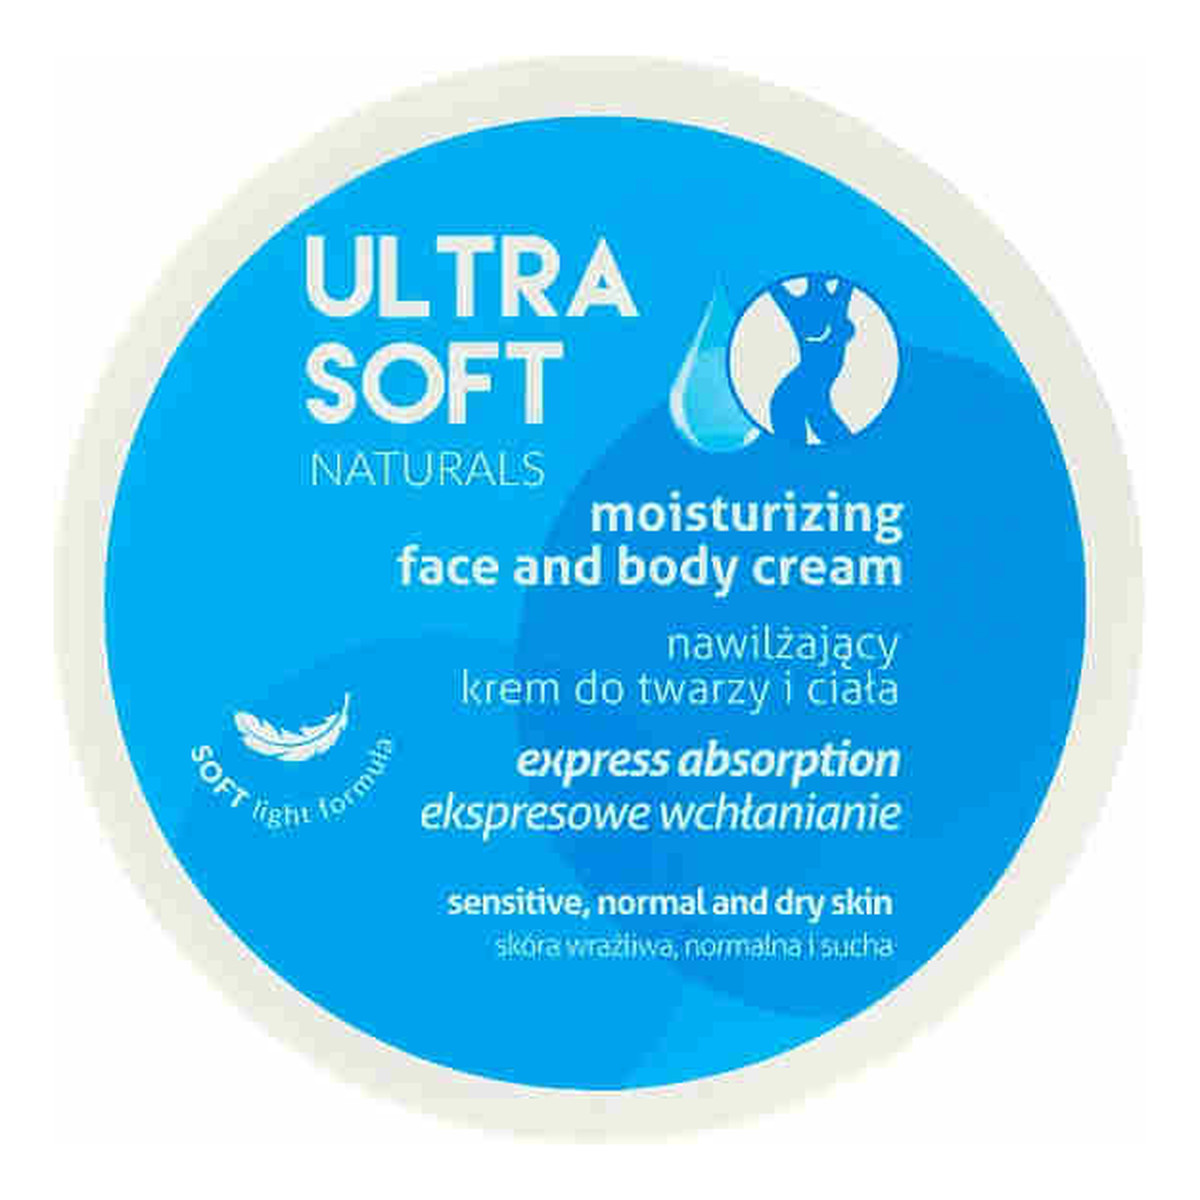 Ultra Soft Naturals nawilżający krem do twarzy i ciała 300ml